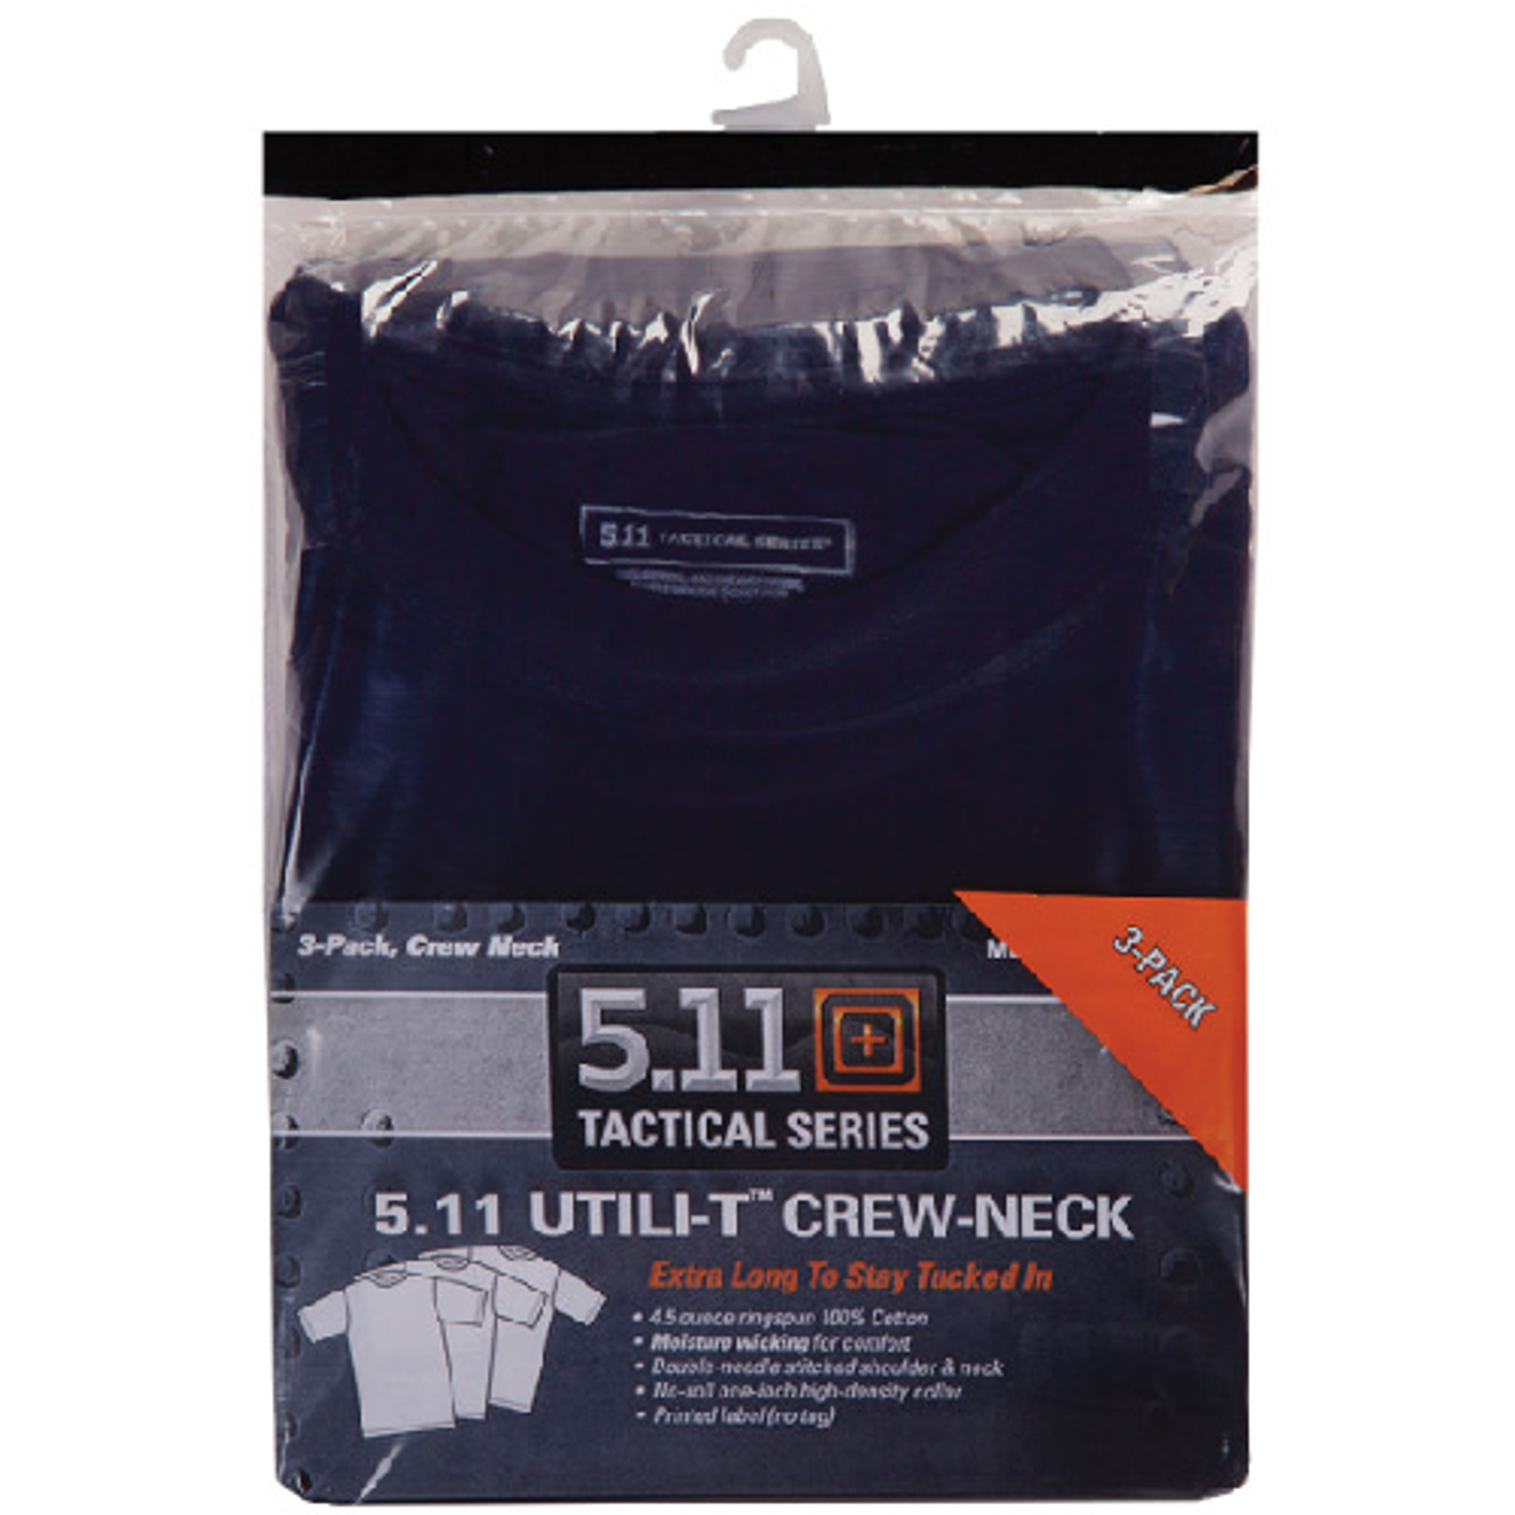 Utili-t Crew T-shirt 3 Pack - KR5-40016724L